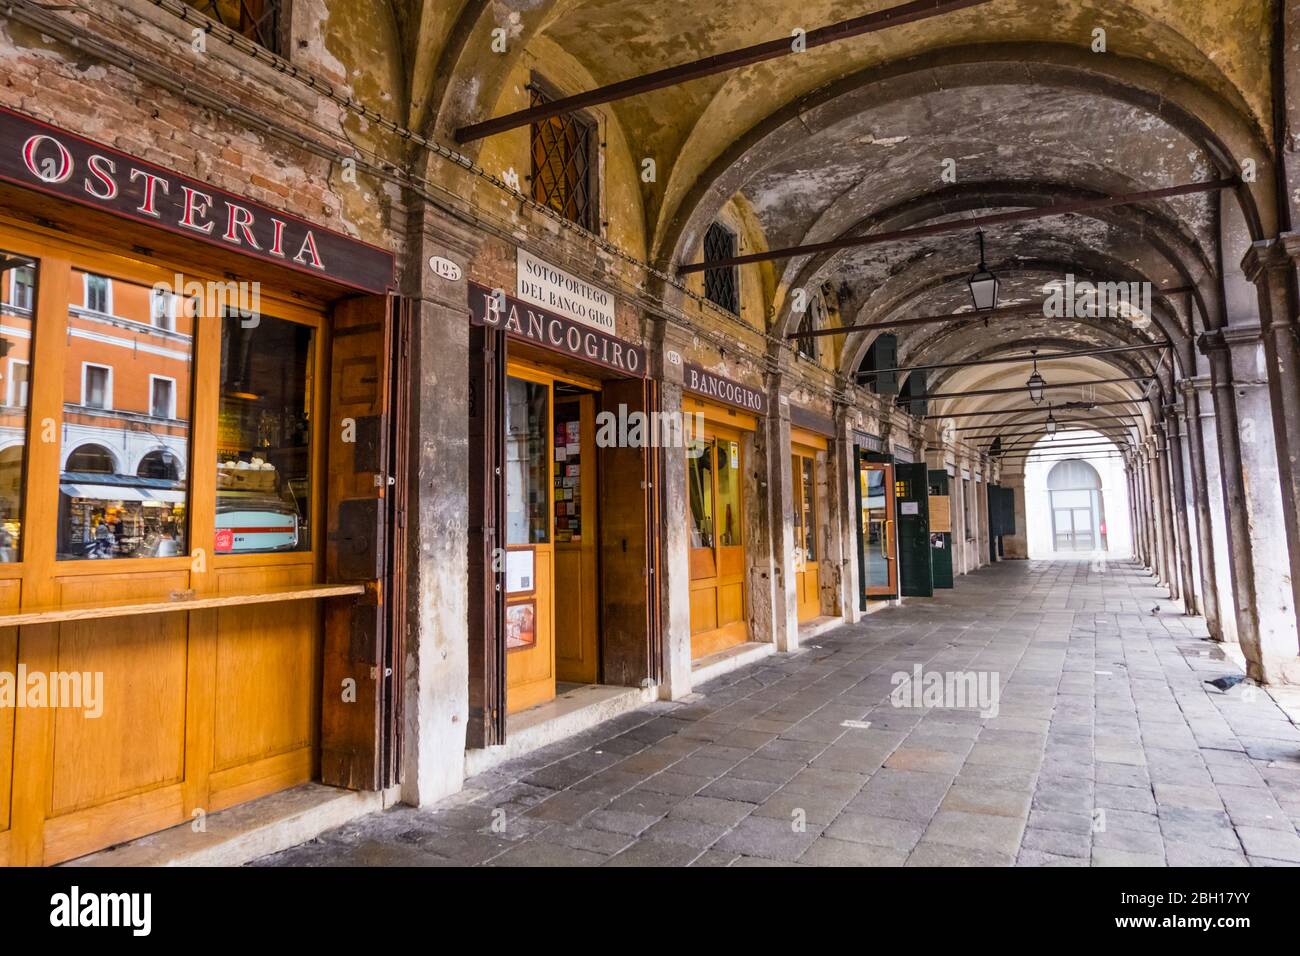 Restaurants et bars à vins dans les passages voûtés, marché du Rialto, quartier San Polo, Venise, Italie Banque D'Images